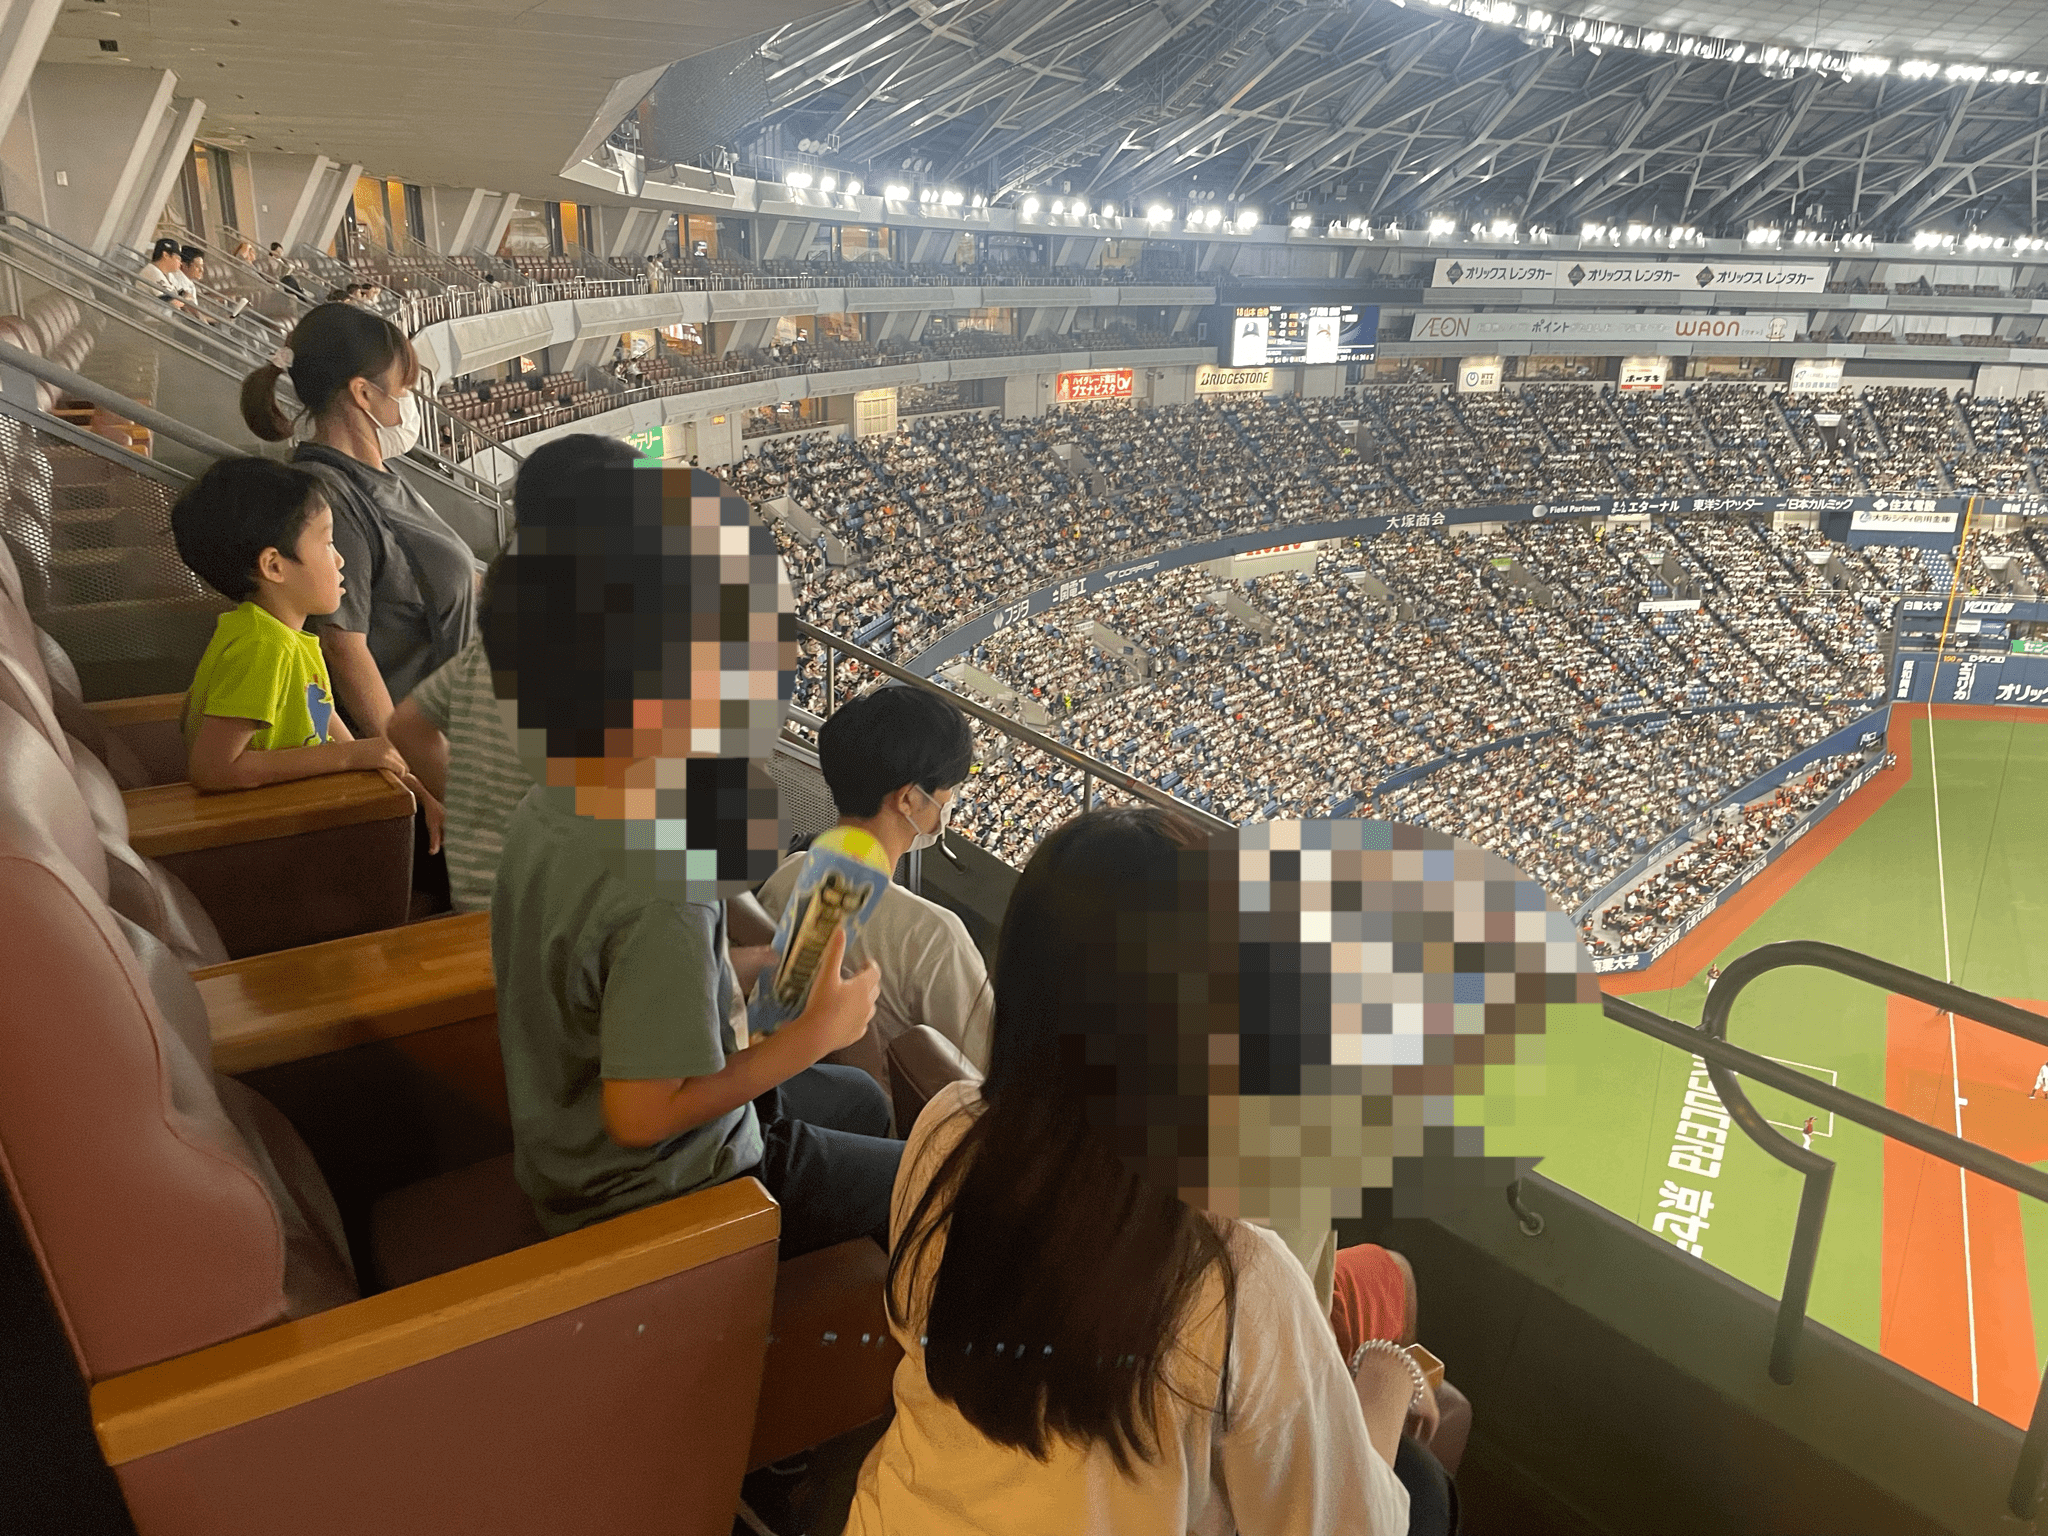 京セラドーム大阪で野球を観戦する子供たち